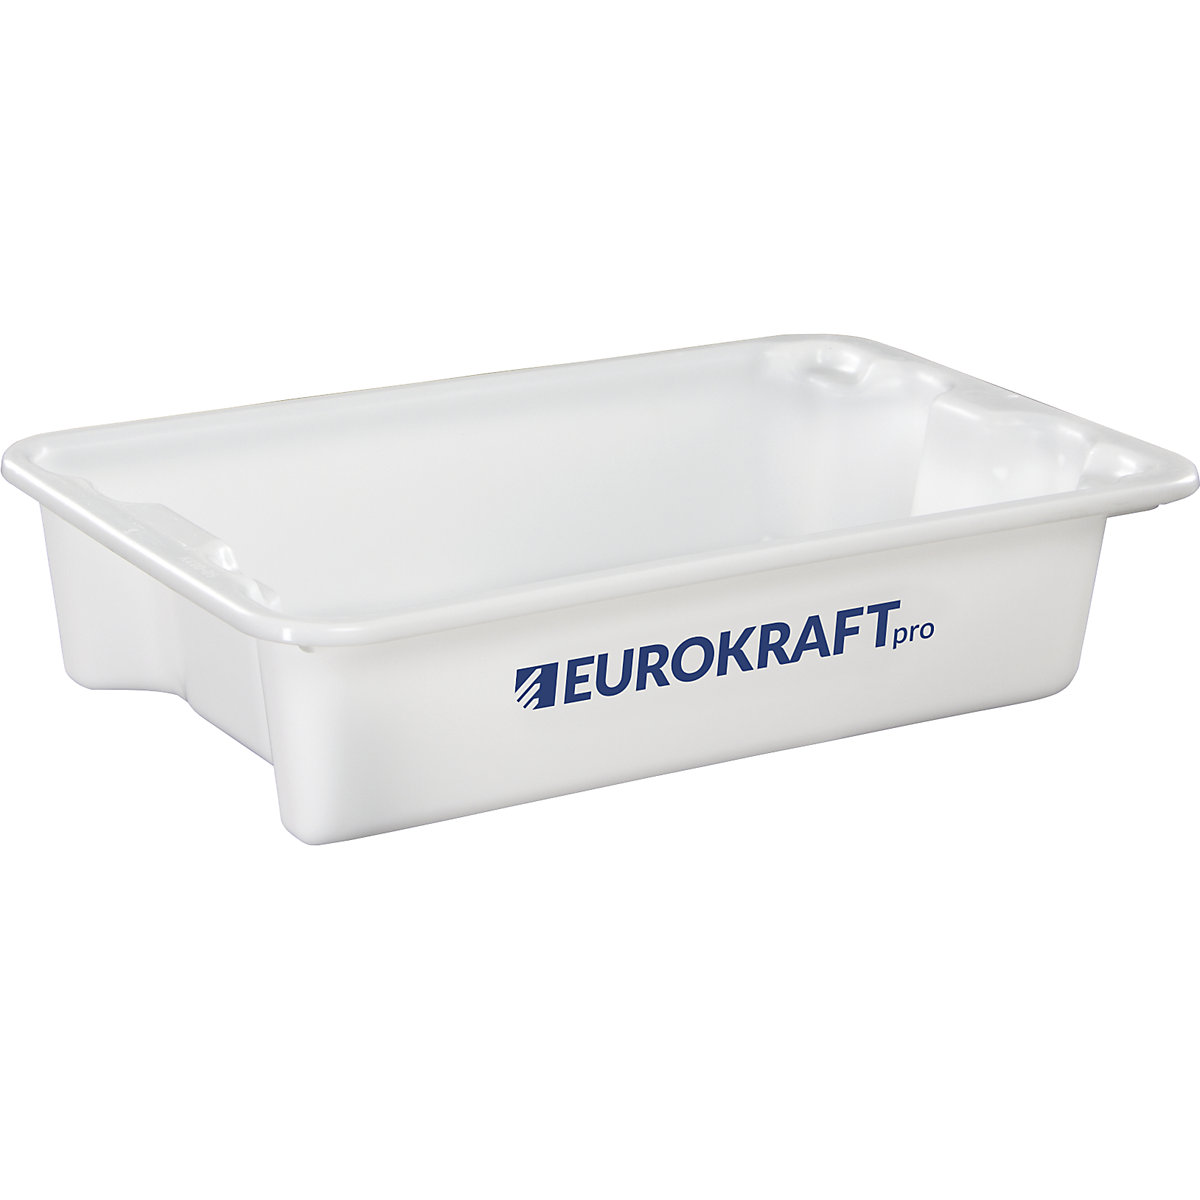 EUROKRAFTpro – Otočná stohovacia nádoba z polypropylénu vhodného pre potraviny, objem 18 litrov, OJ 3 ks, steny a dno uzatvorené, prírodná